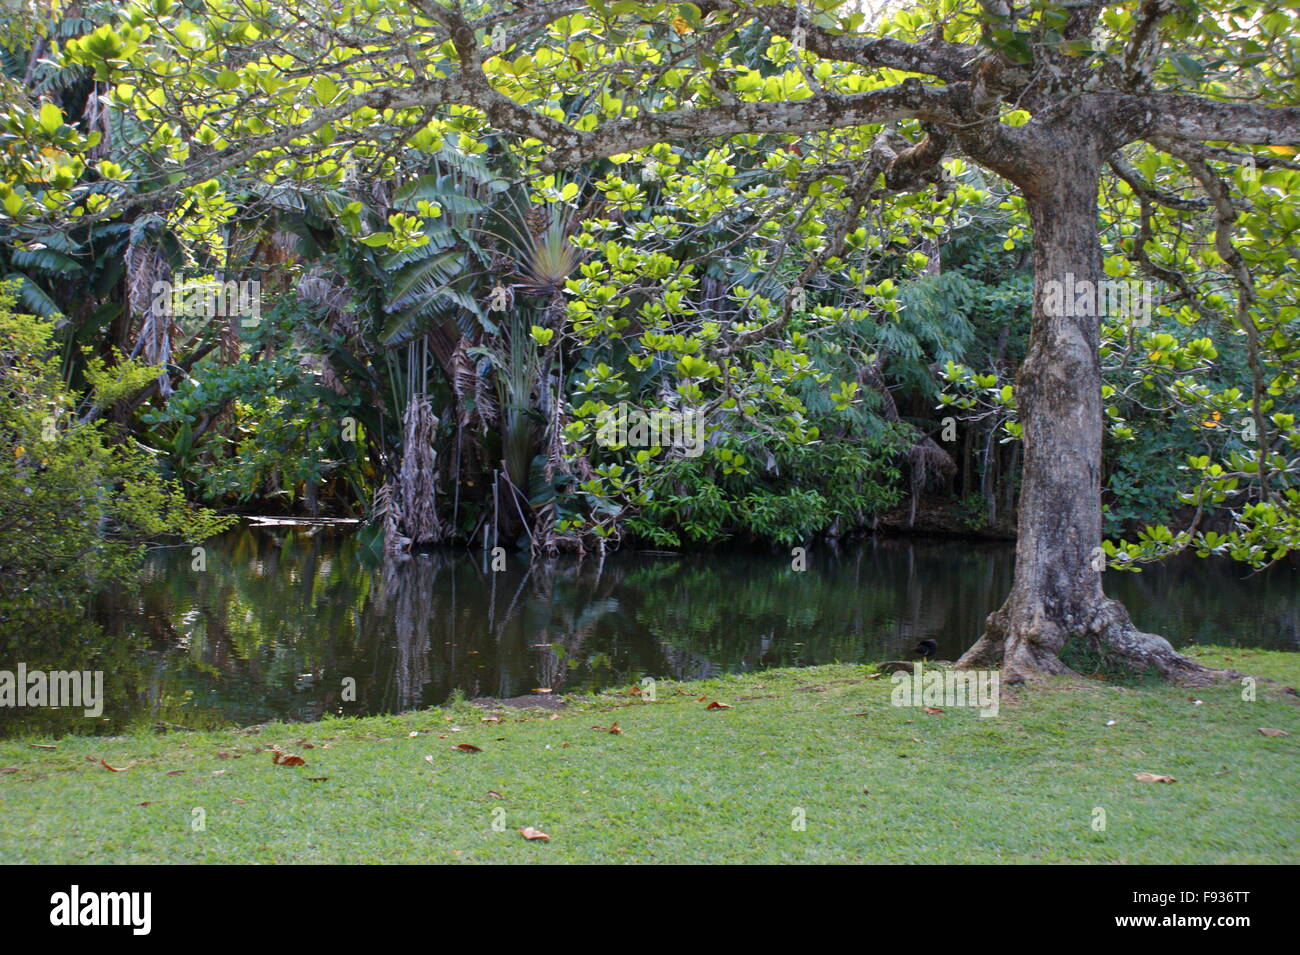 Mauritius. Pamplemousses Botanical Garden. Sir Seewoosagur Ramgoolam Botanical Garden. Stock Photo